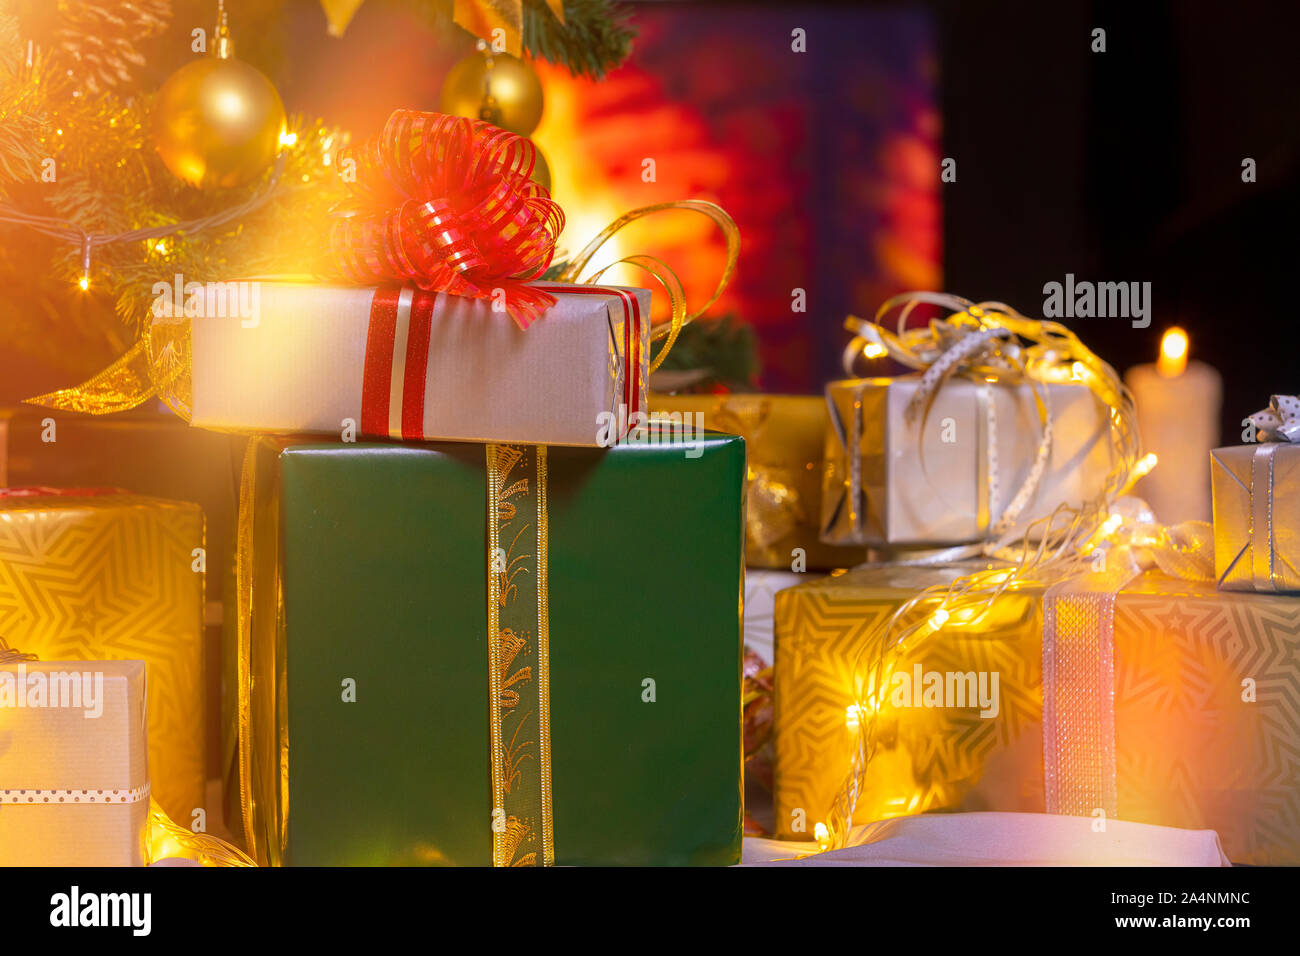 Pile de cadeaux emballés en vertu de l'arbre de Noël à l'encontre de cheminée. Beaucoup de cadeaux de Noël sous l'arbre. Des bougies sur un plancher en bois. L'accent sur g Banque D'Images